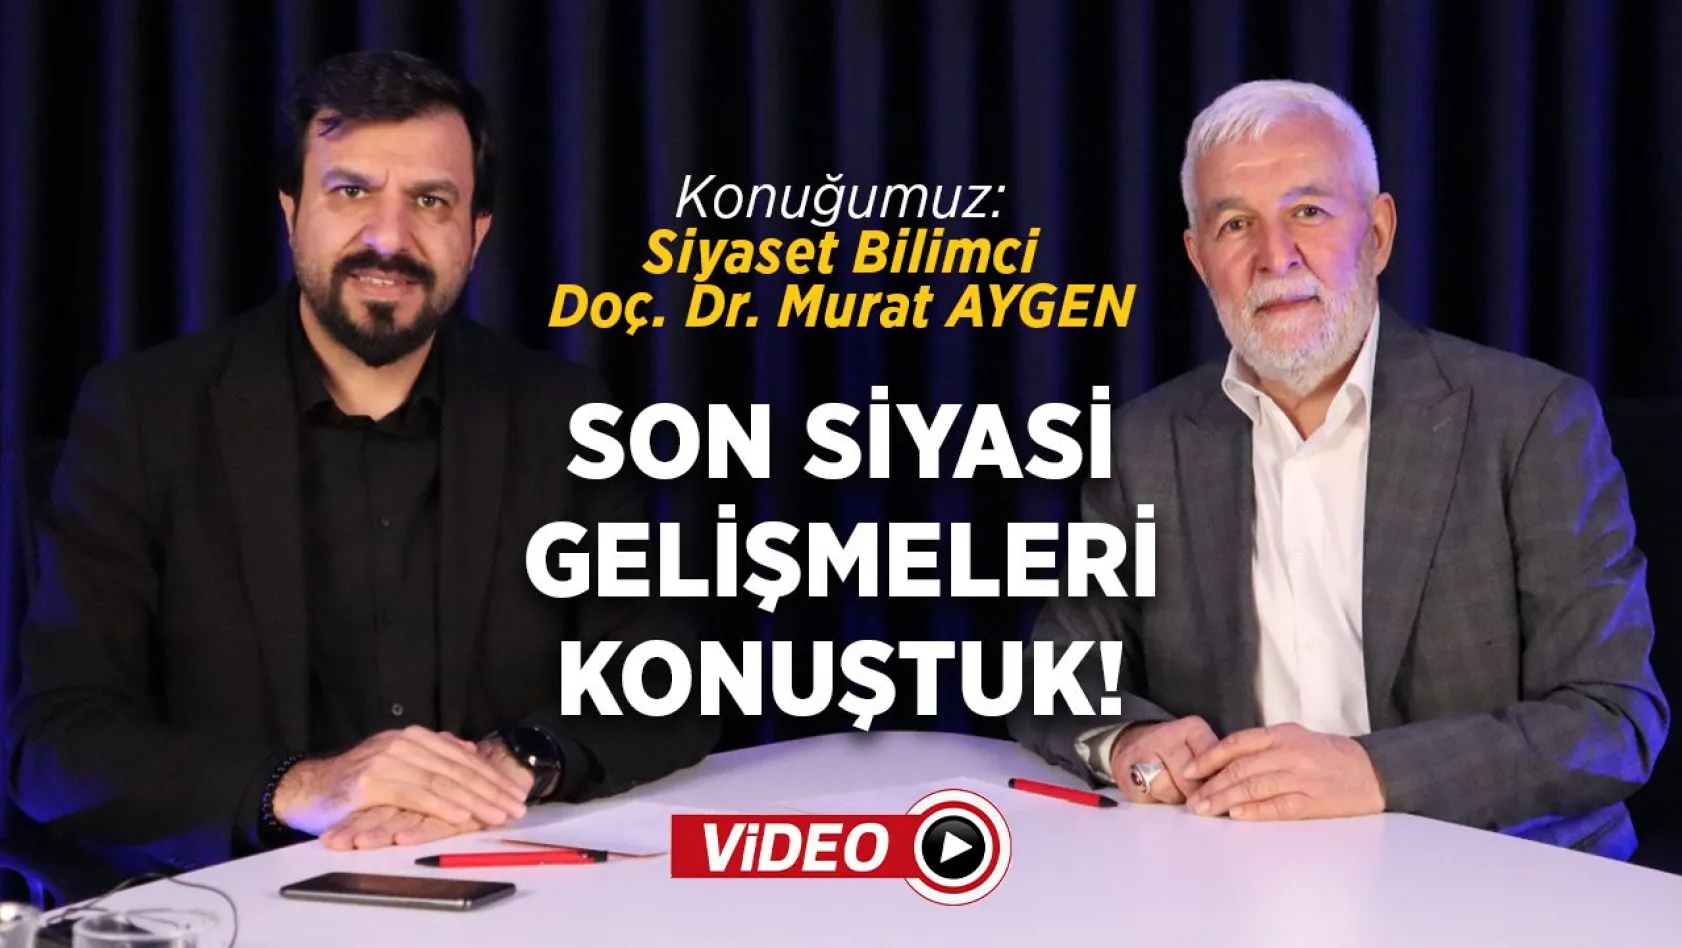 Siyaset Bilimci - Doç. Dr. Murat Aygen ile son siyasi gelişmeleri konuştuk!